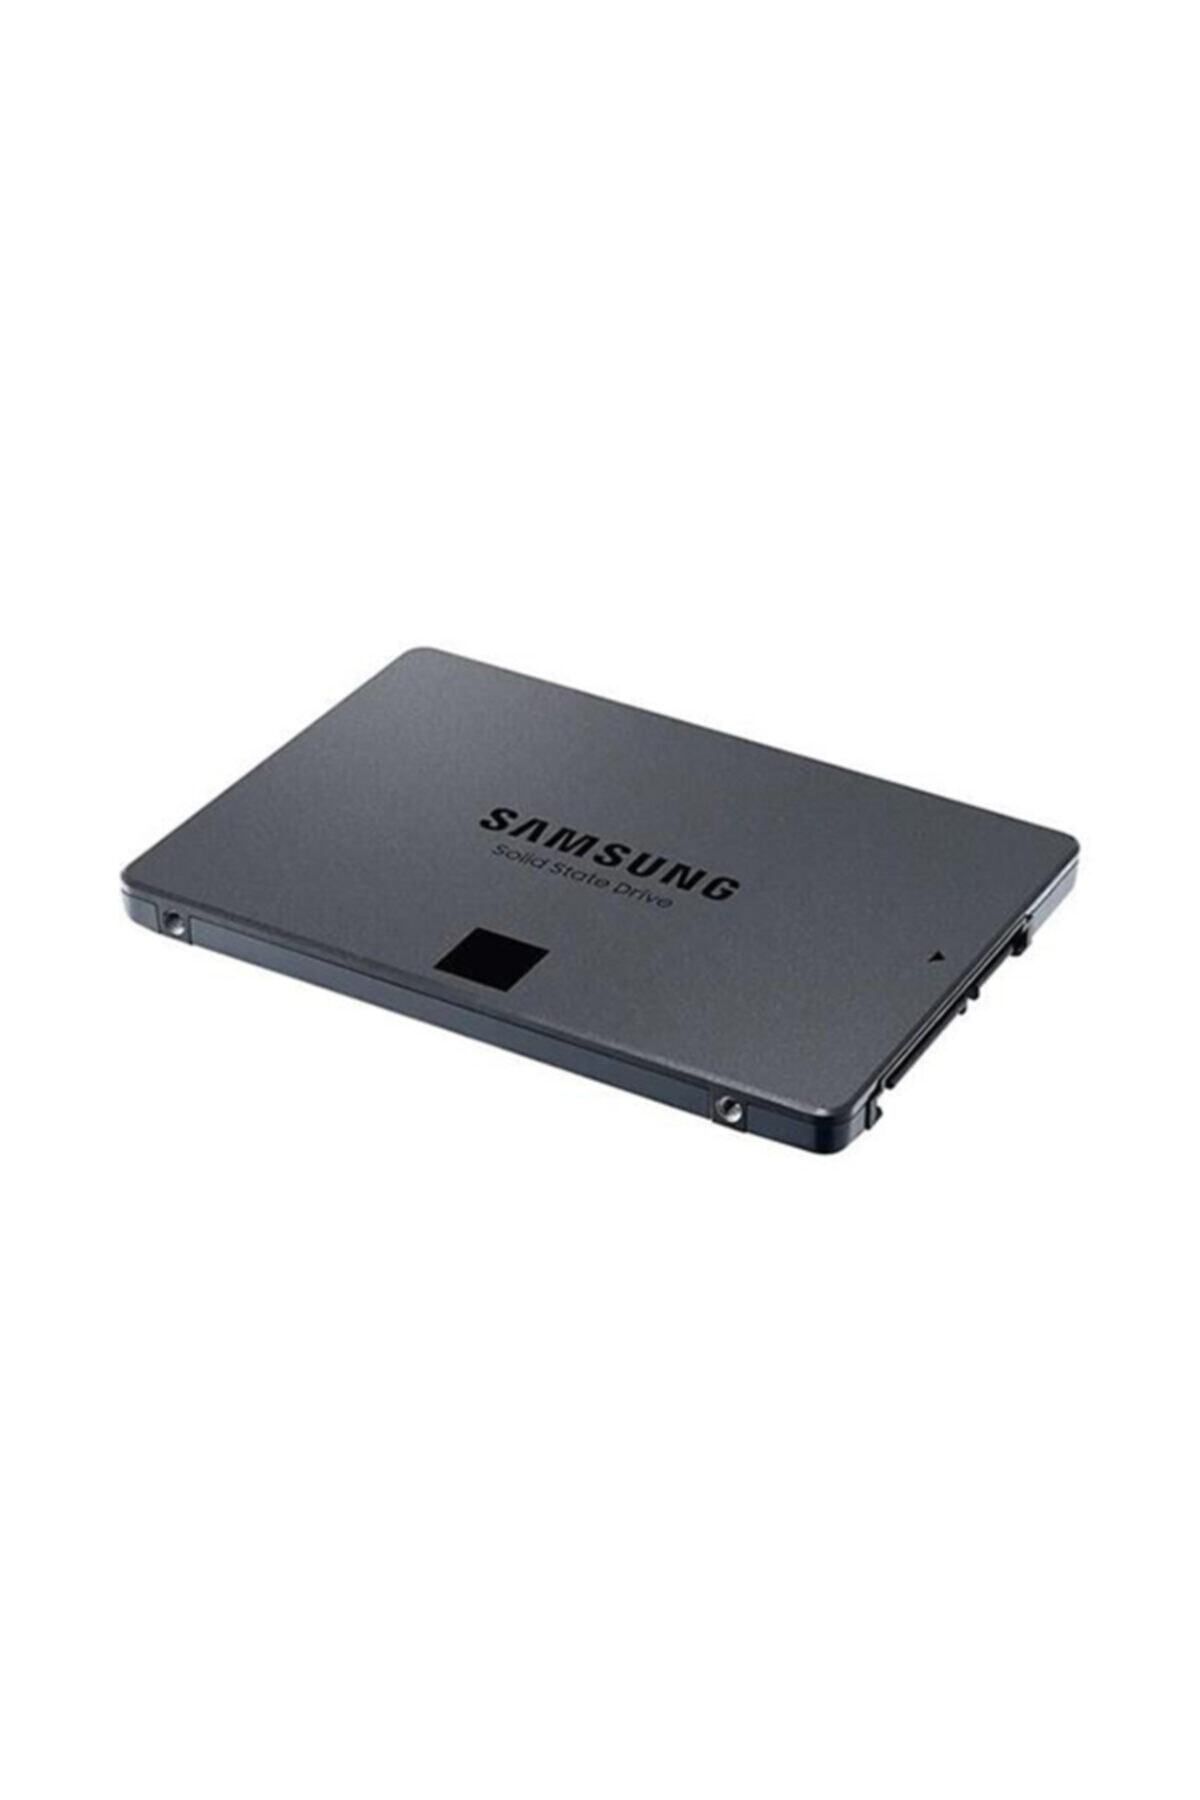 Samsung 1 Tb 870 Qvo 2.5" Sata3 Mz-77q1t0bw 560-530 Mb/s